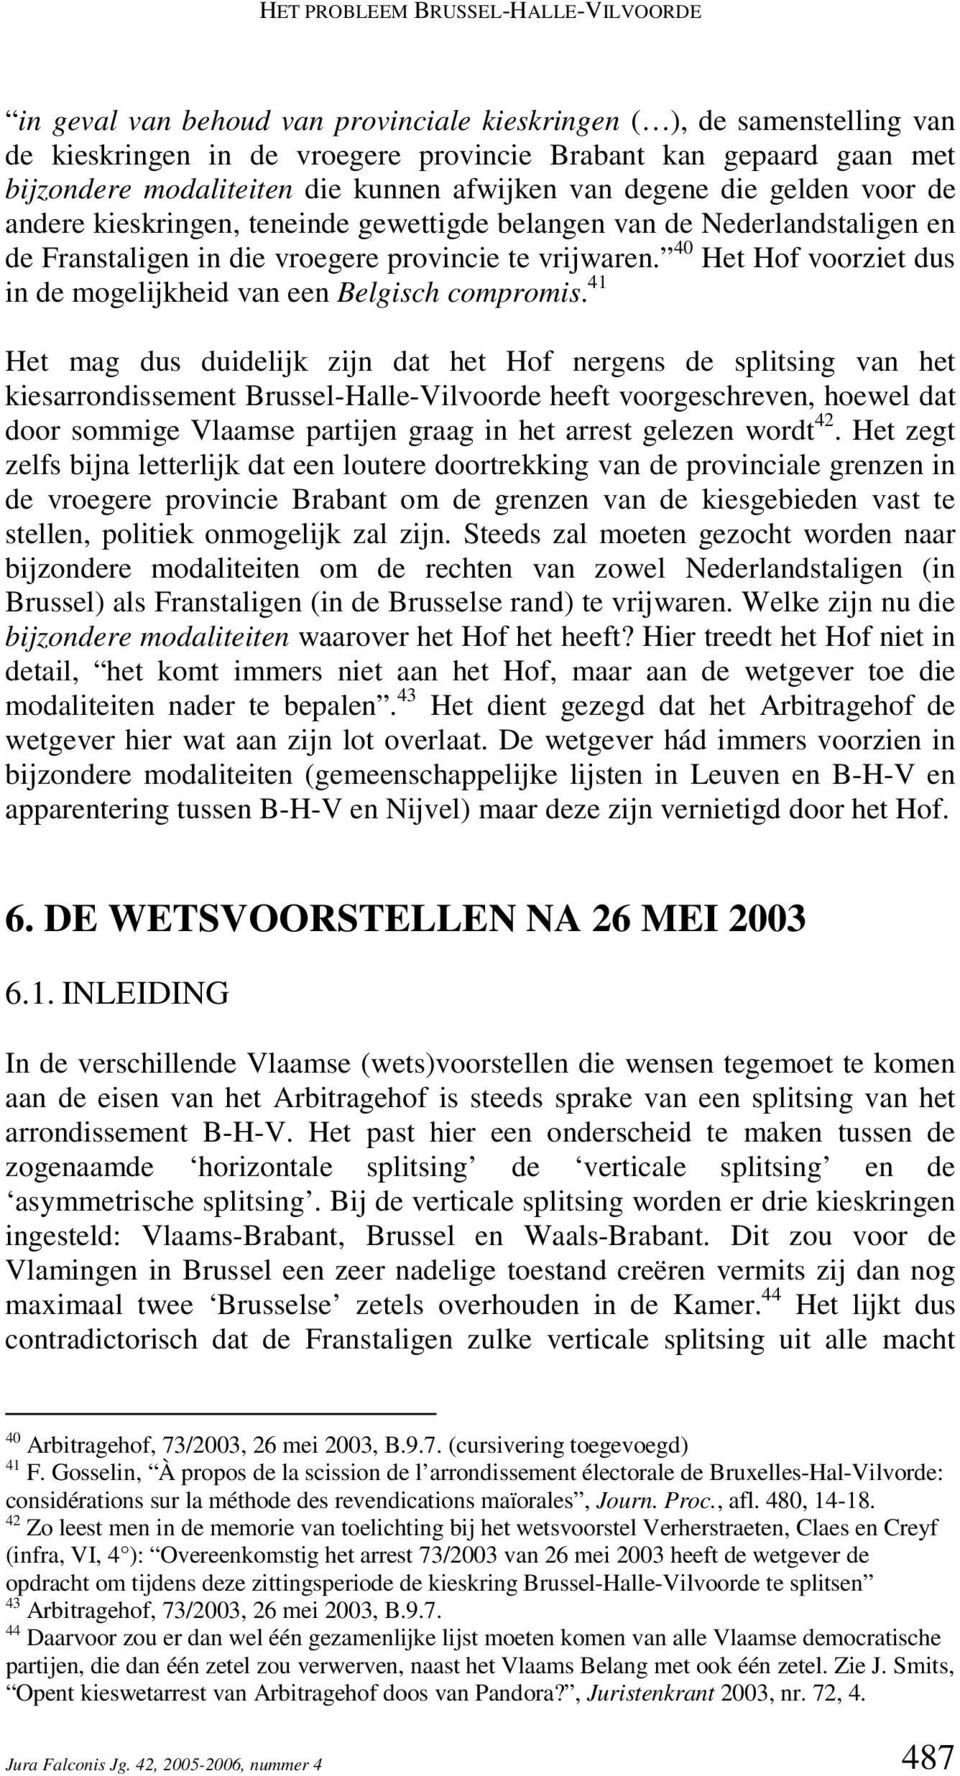 40 Het Hof voorziet dus in de mogelijkheid van een Belgisch compromis.